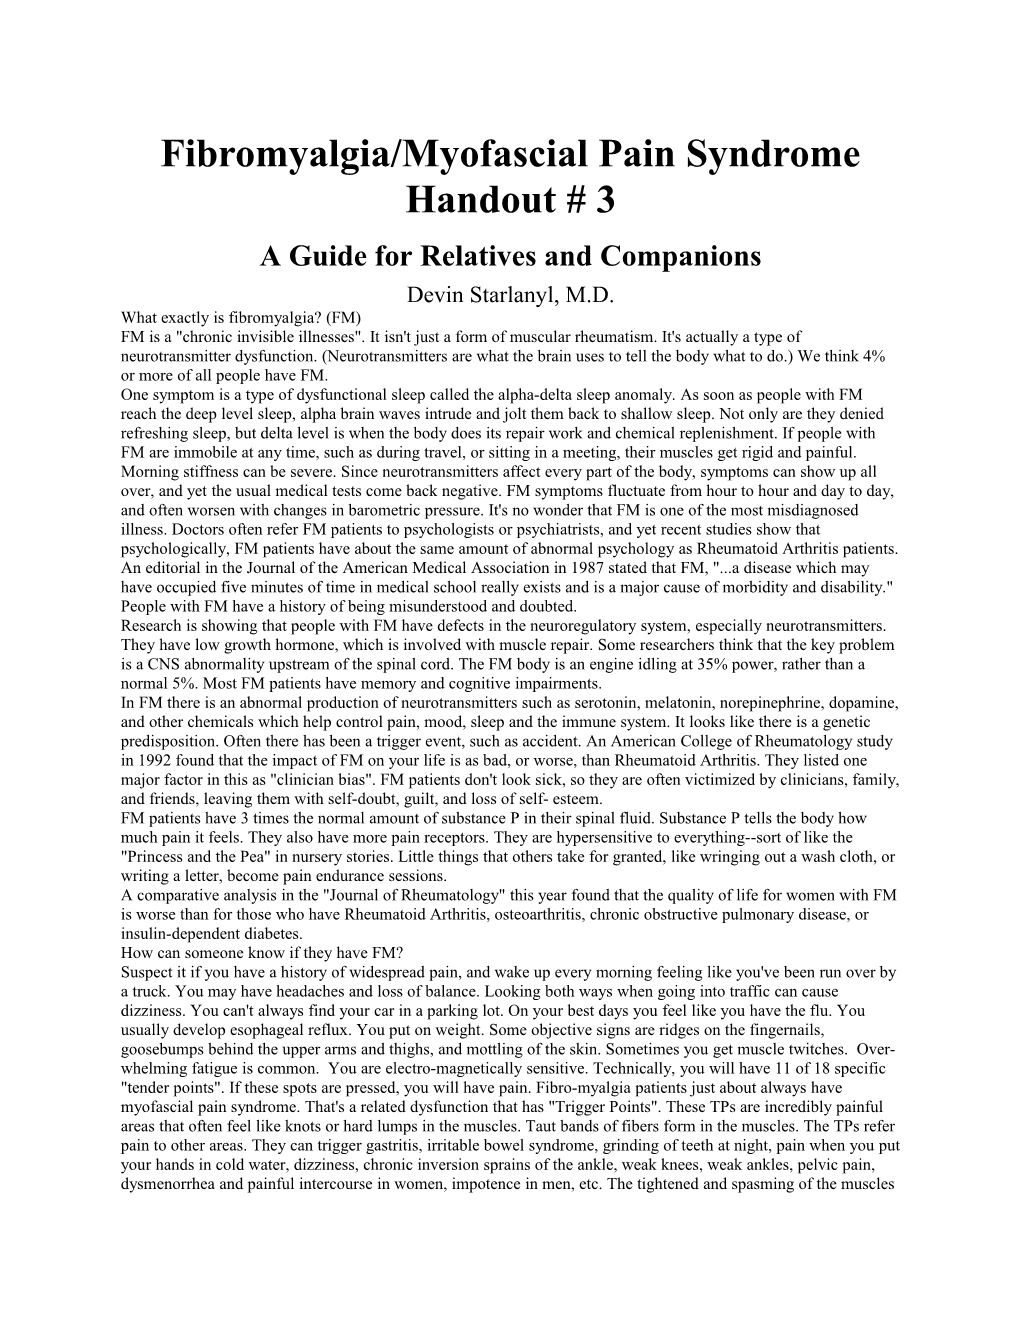 Fibromyalgia/Myofascial Pain Syndrome Handout # 3